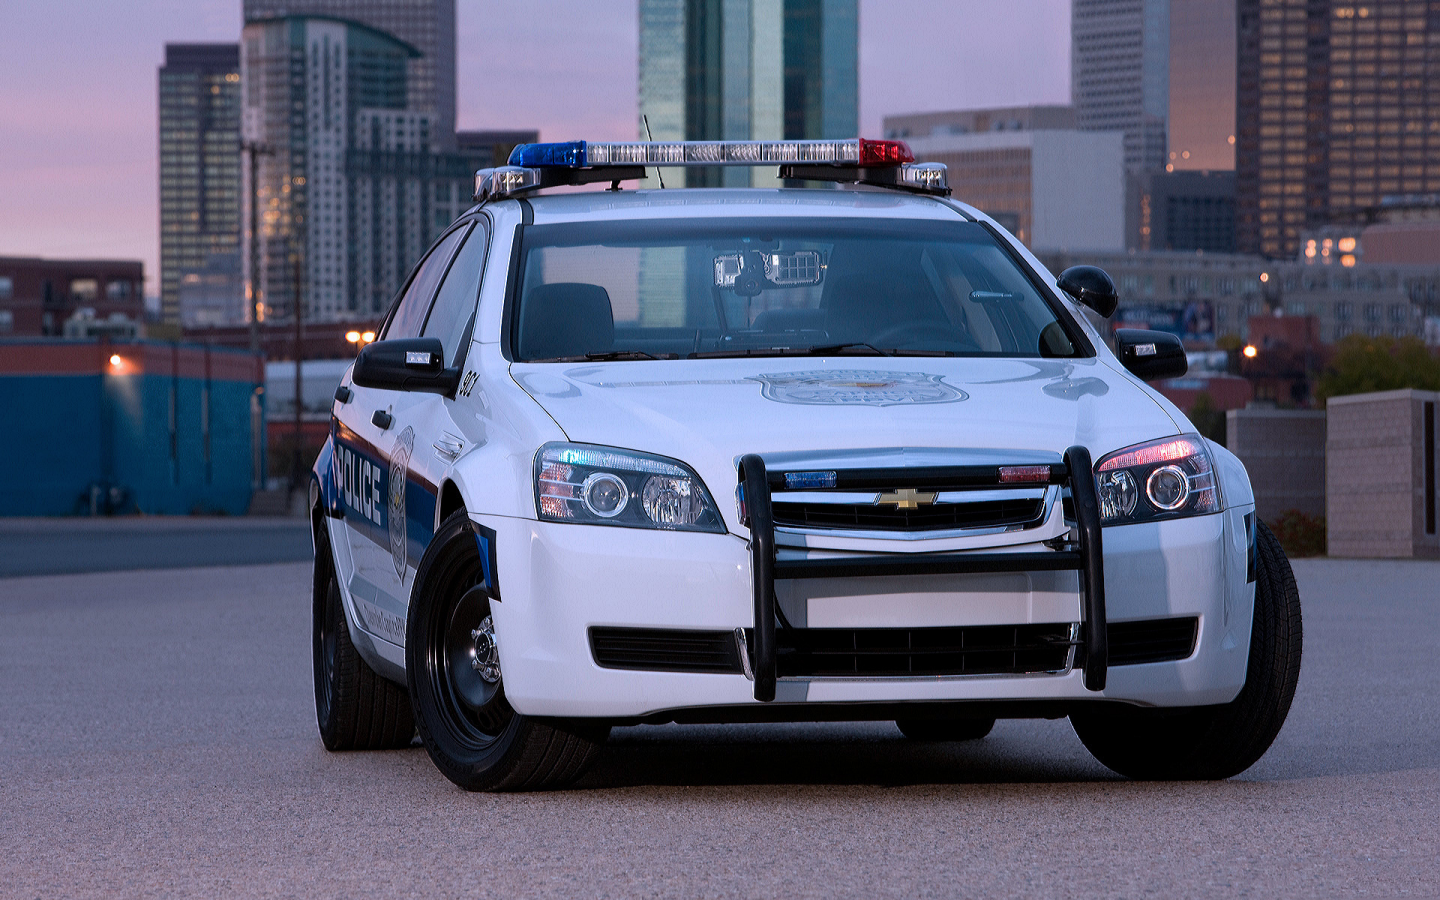 Город, вечер, полицейское авто, Chevrollet-Caprice-Police-Patrol-Vehicle